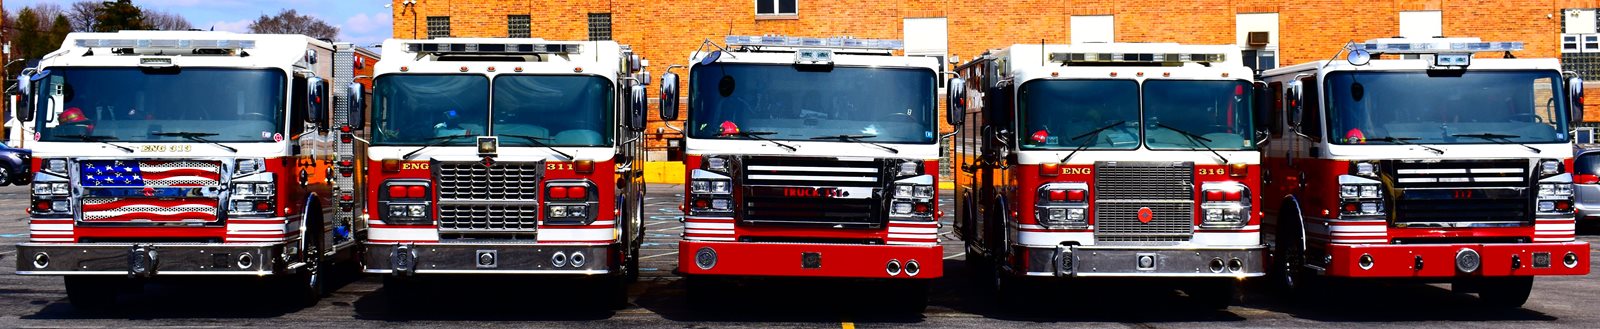 Altoona Fire Department fire trucks.